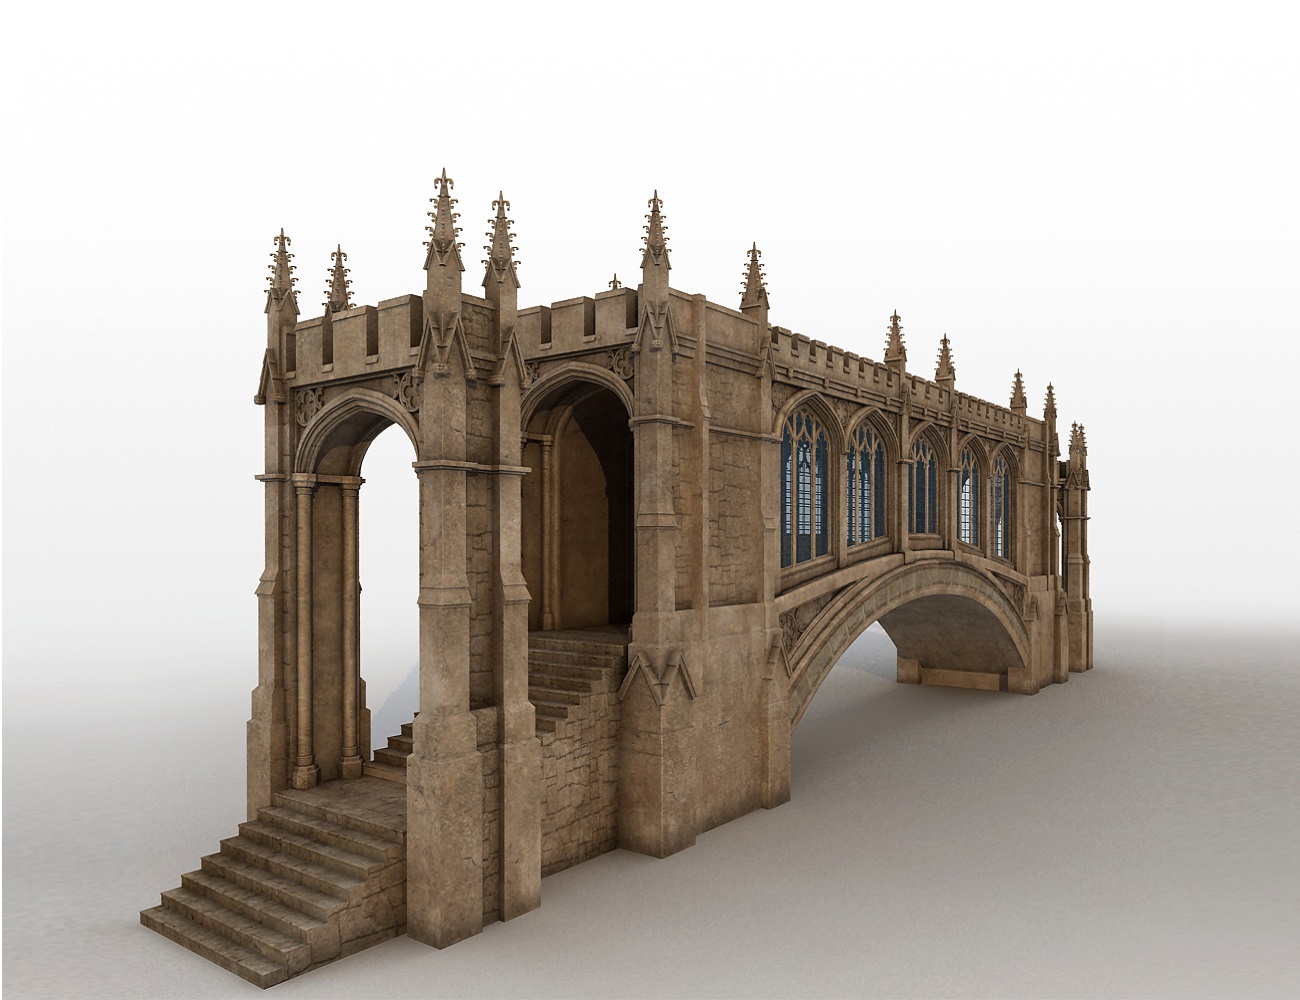 Cambridge Bridge of Sighs by: Cornucopia3D, 3D Models by Daz 3D